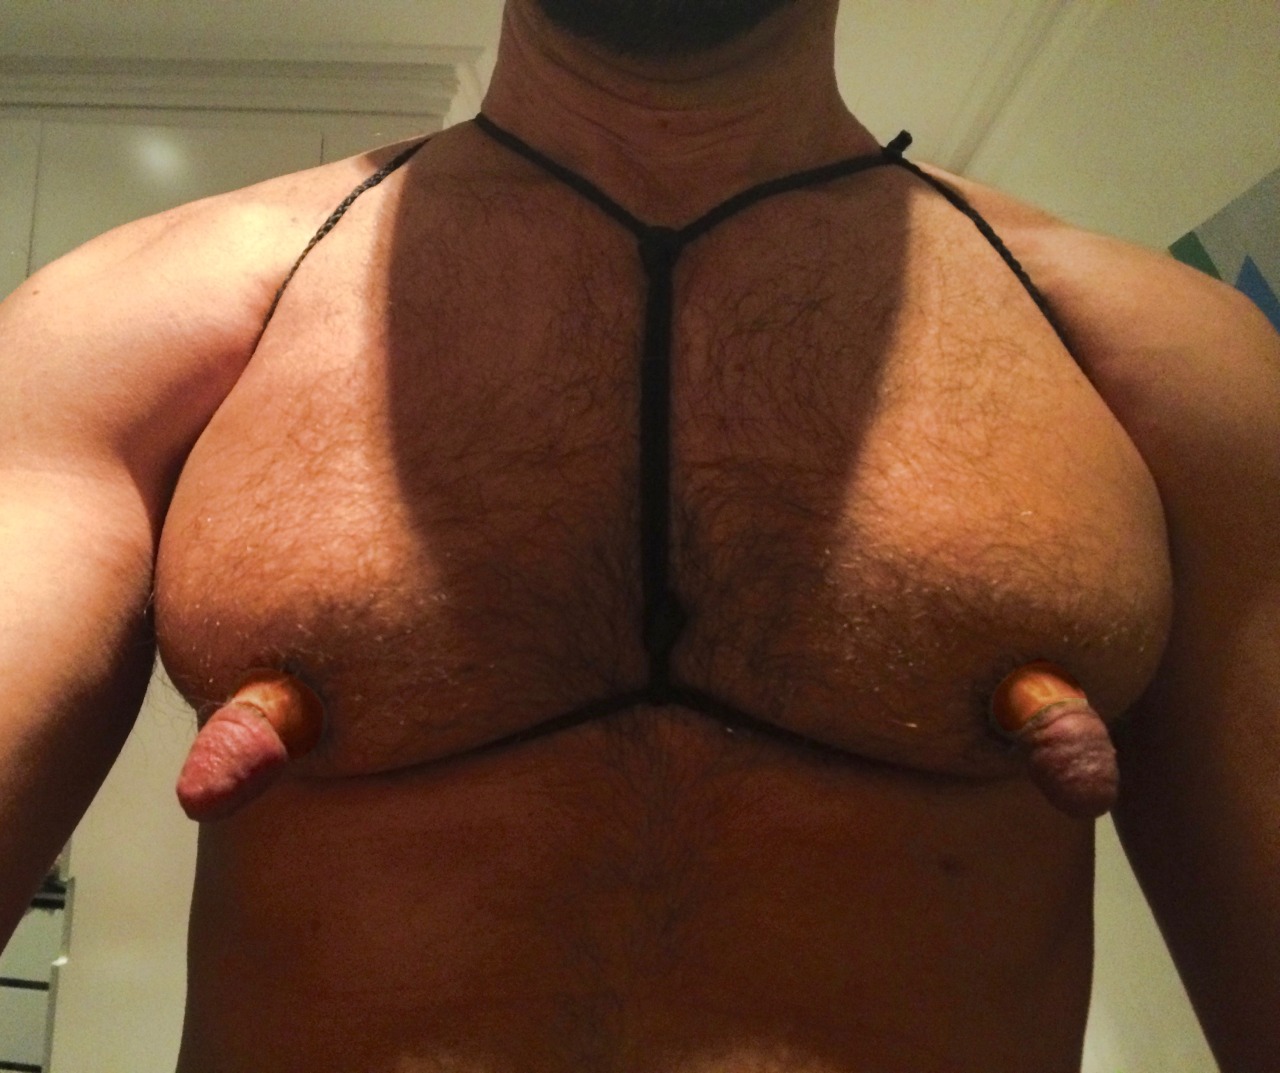 длинная грудь у мужчин фото 89